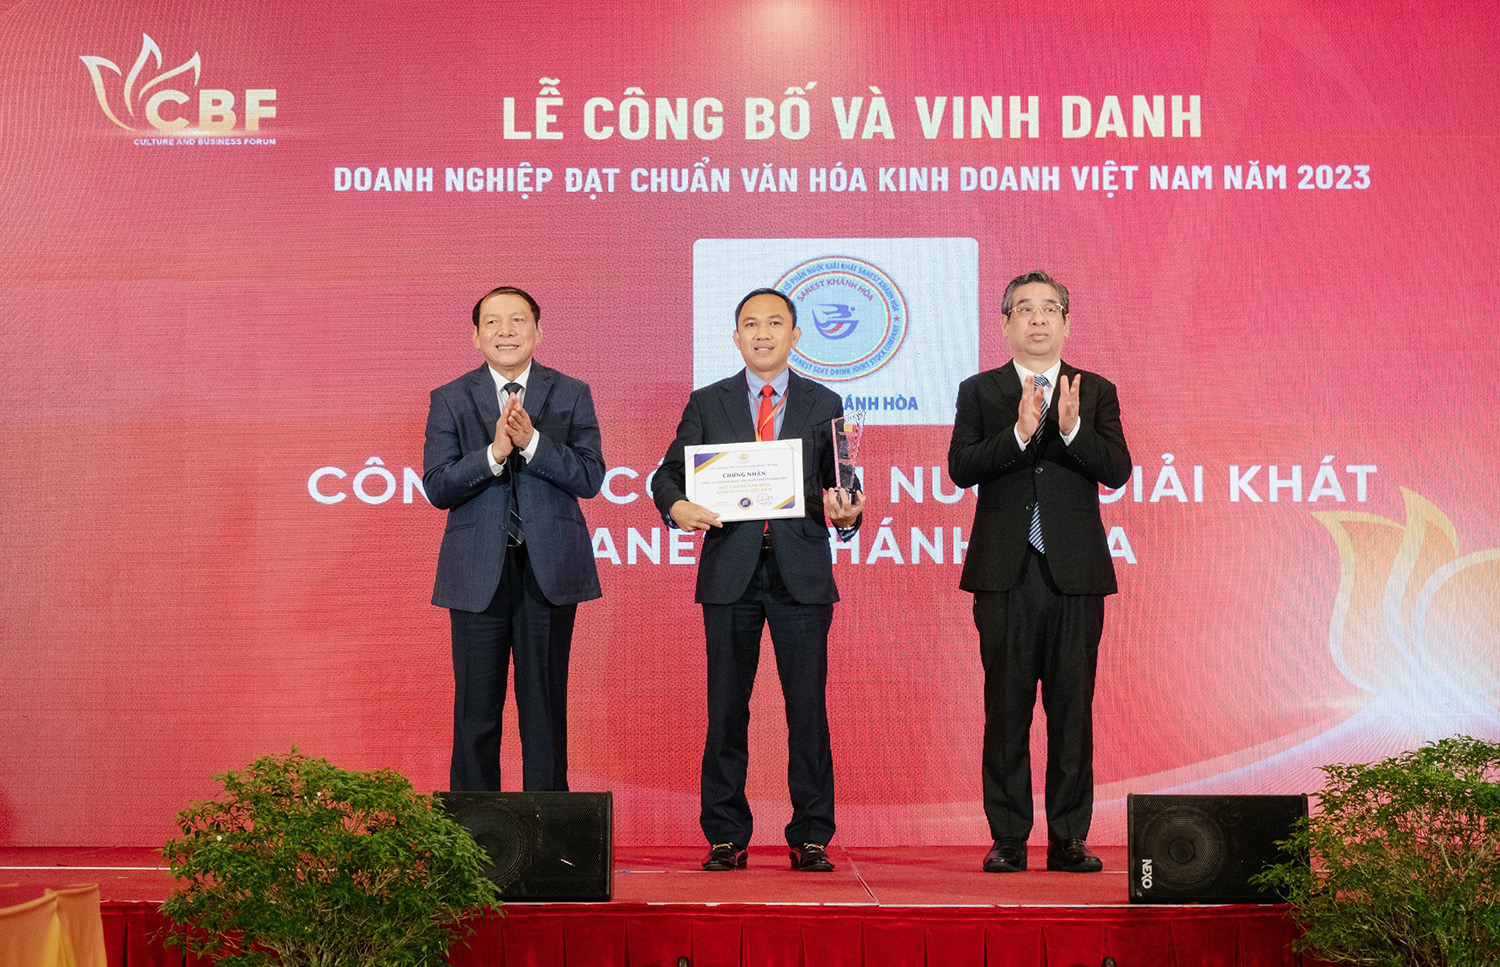 Sanest Khánh Hòa “Doanh nghiệp đạt chuẩn văn hóa kinh doanh Việt Nam năm 2023”